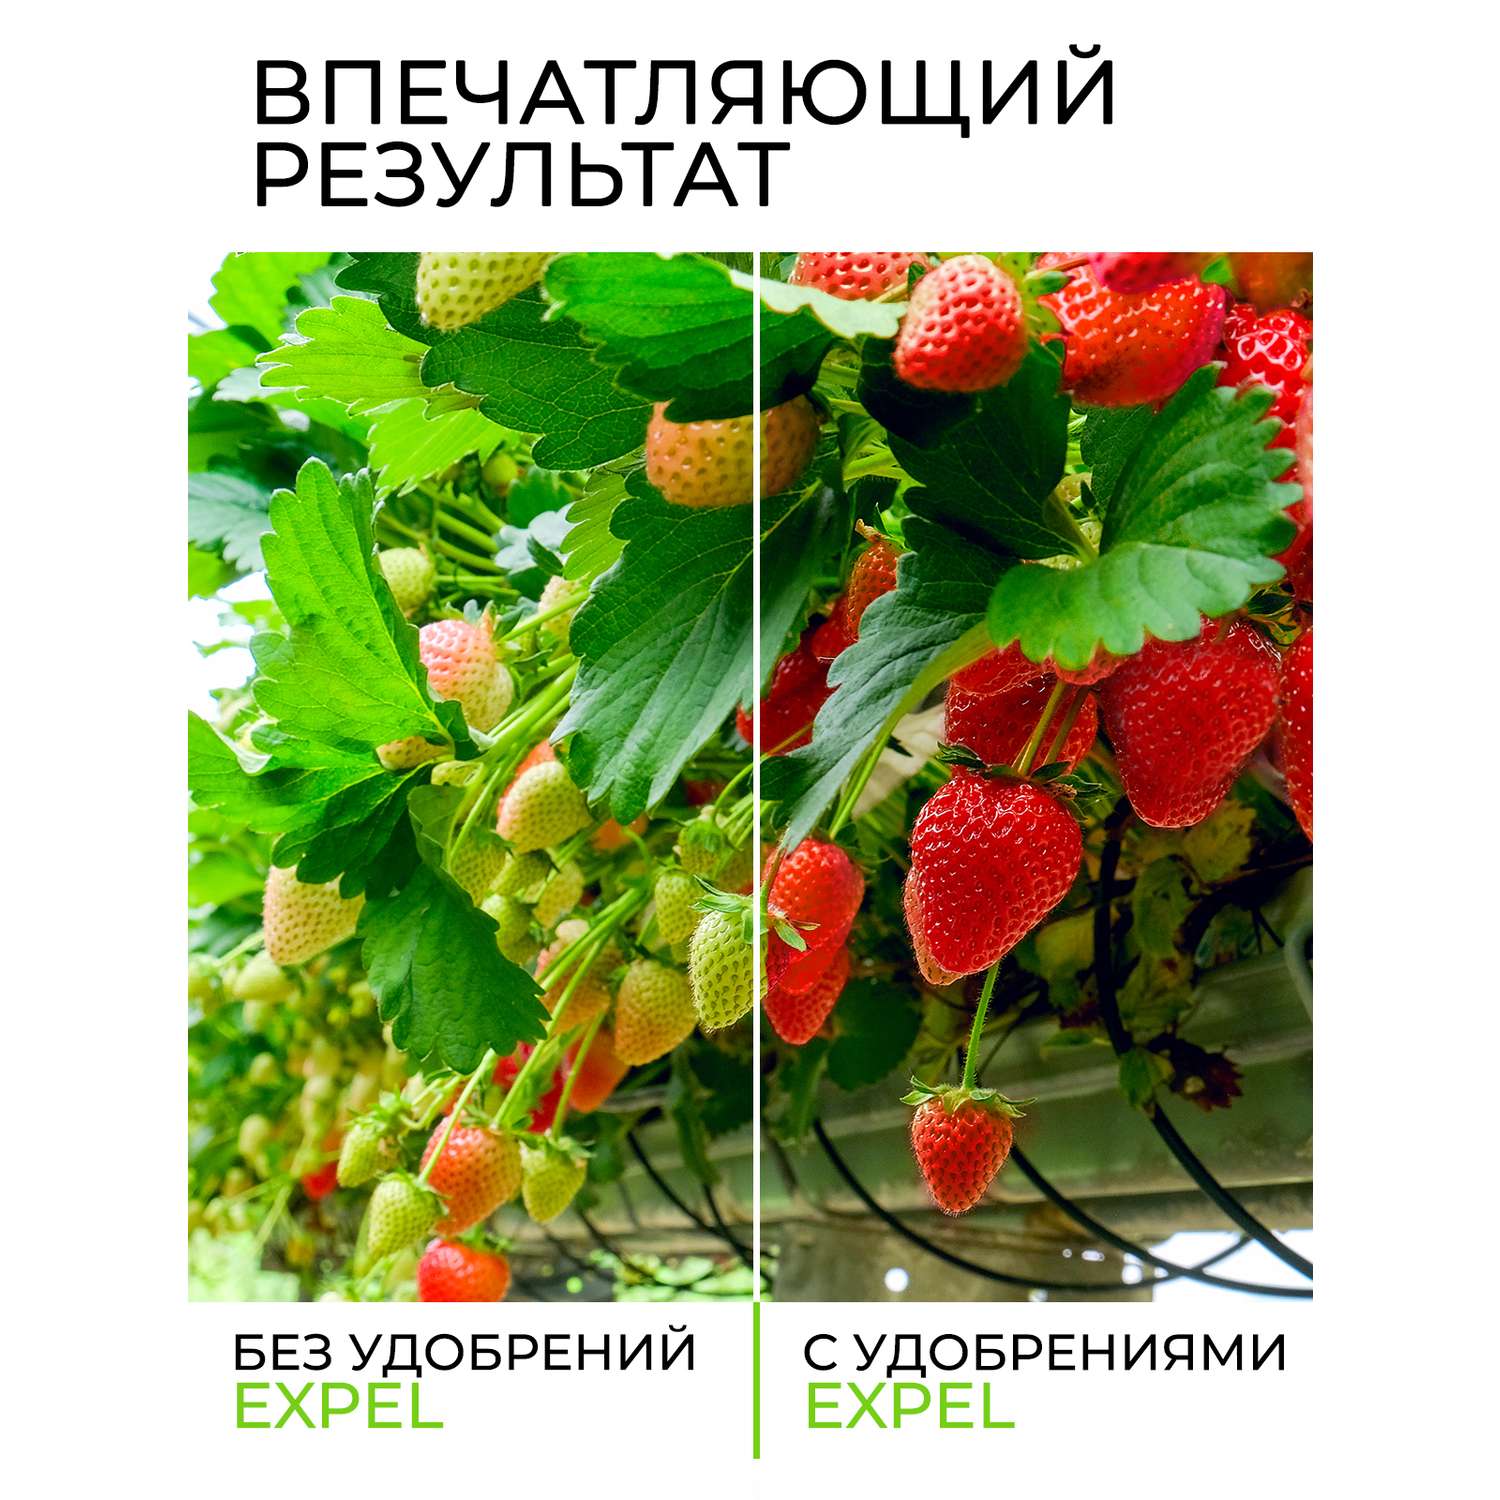 Удобрение Expel для клубники и ягодных 12 органик микс NPK 4-2-1 - фото 4